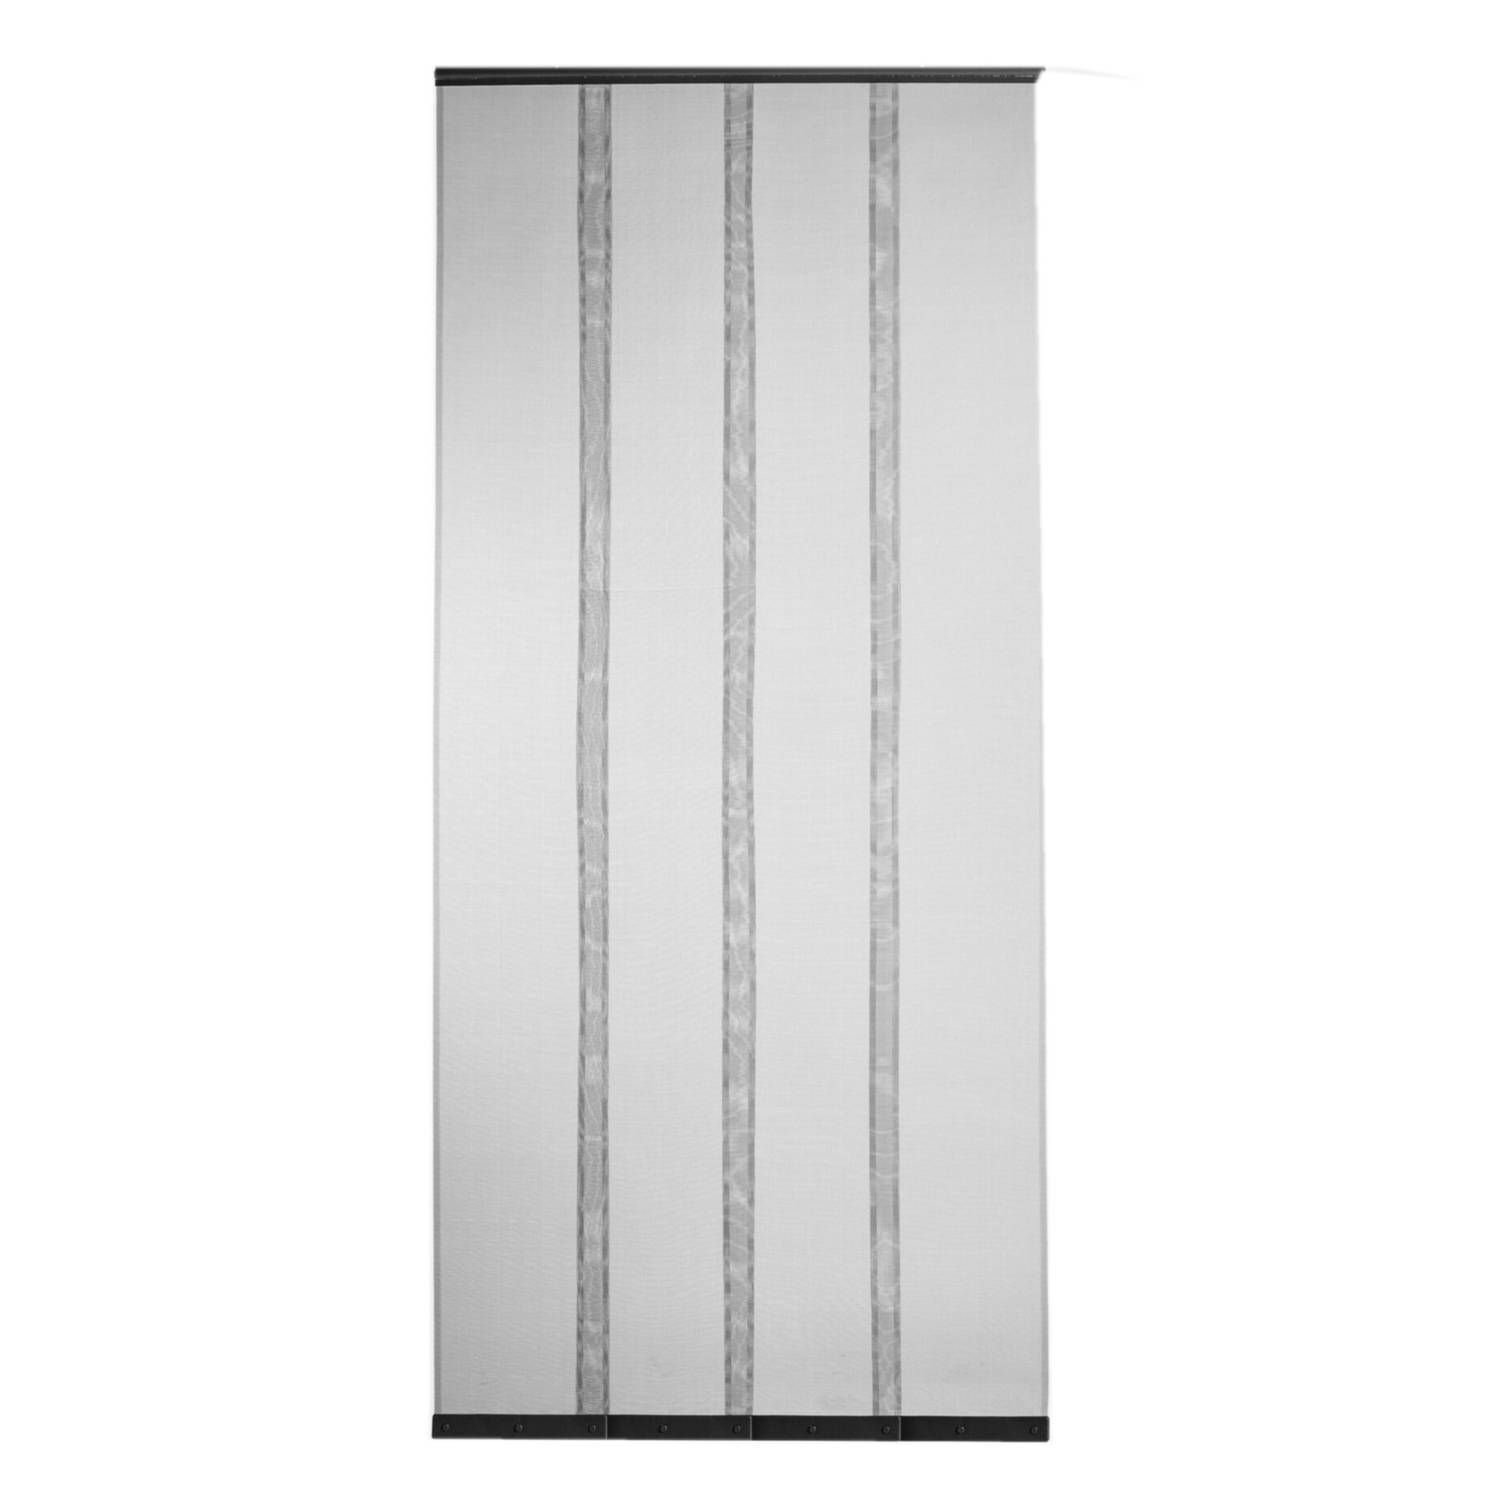 Magnetisch vliegen/insecten gordijn zwart 100 x 230 cm - Vliegengordijnen